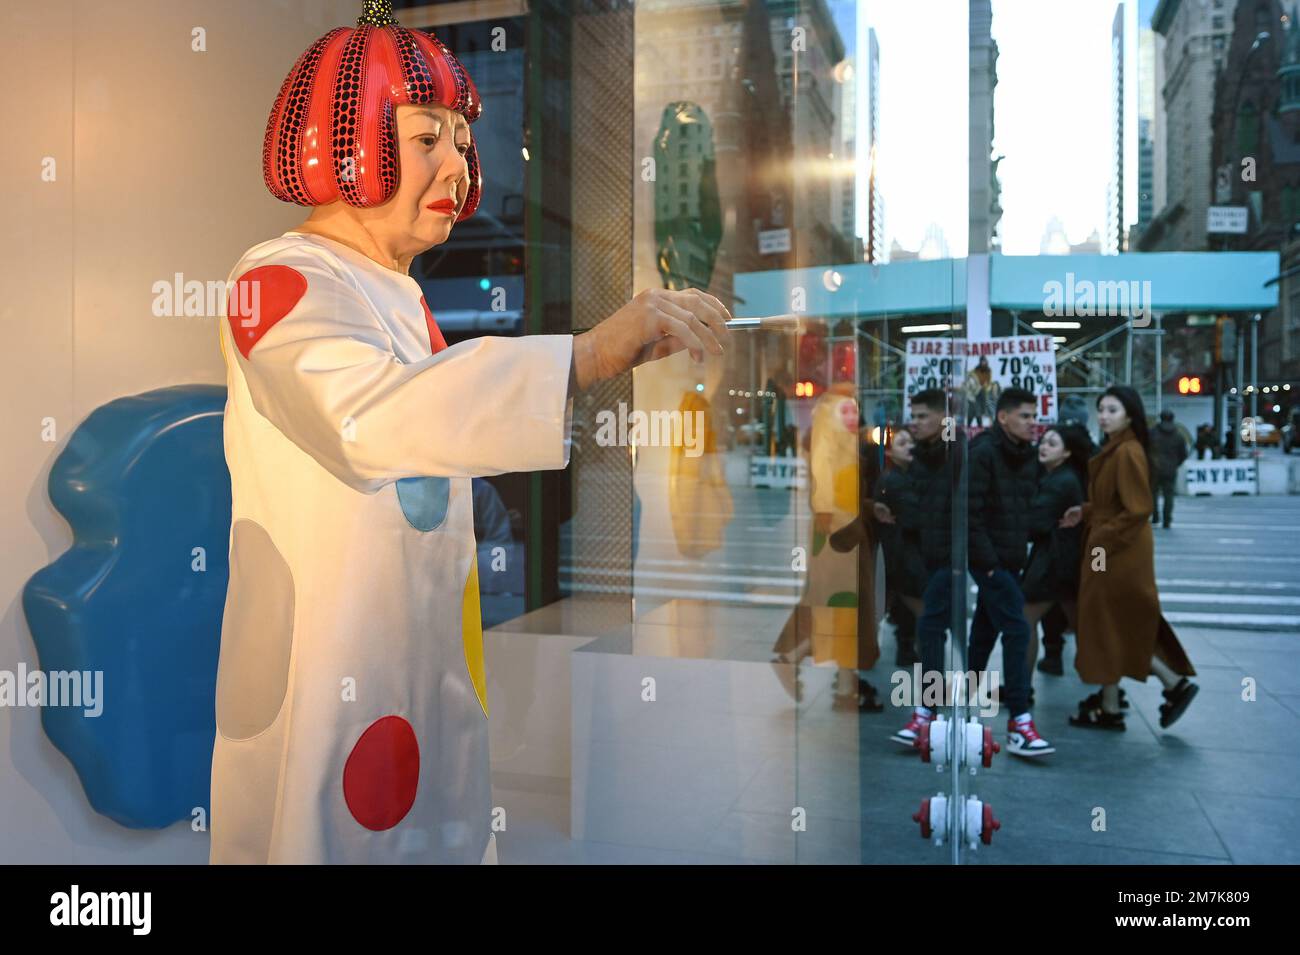 New York is dotty about Yayoi Kusama robot at Louis Vuitton